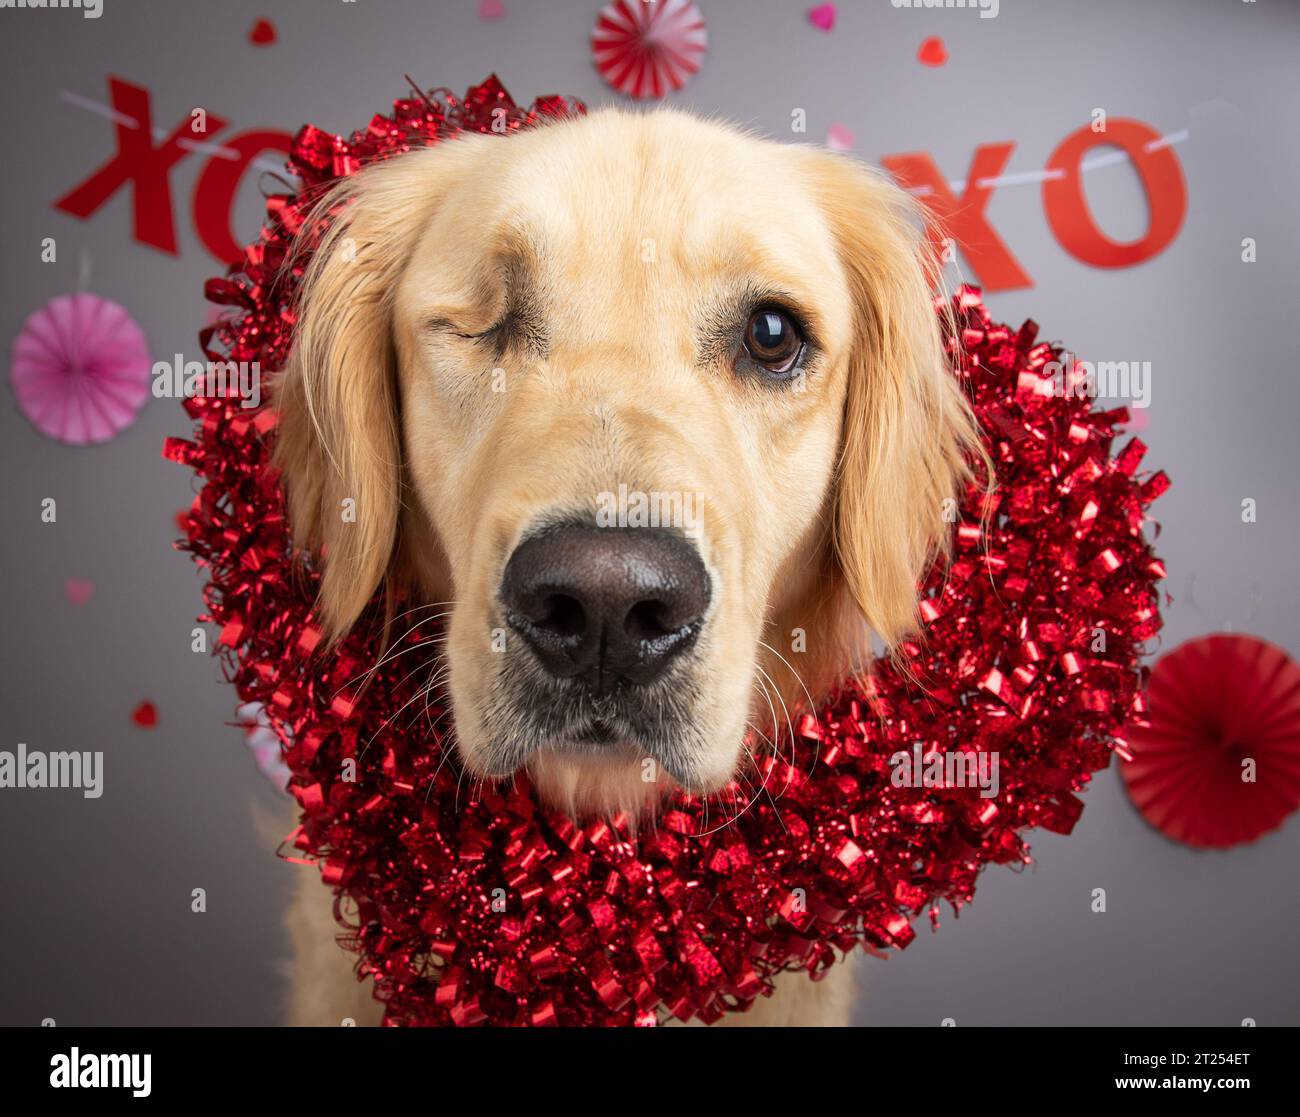 Ritratto di un cane con un occhio che indossa una corona a forma di cuore Foto Stock